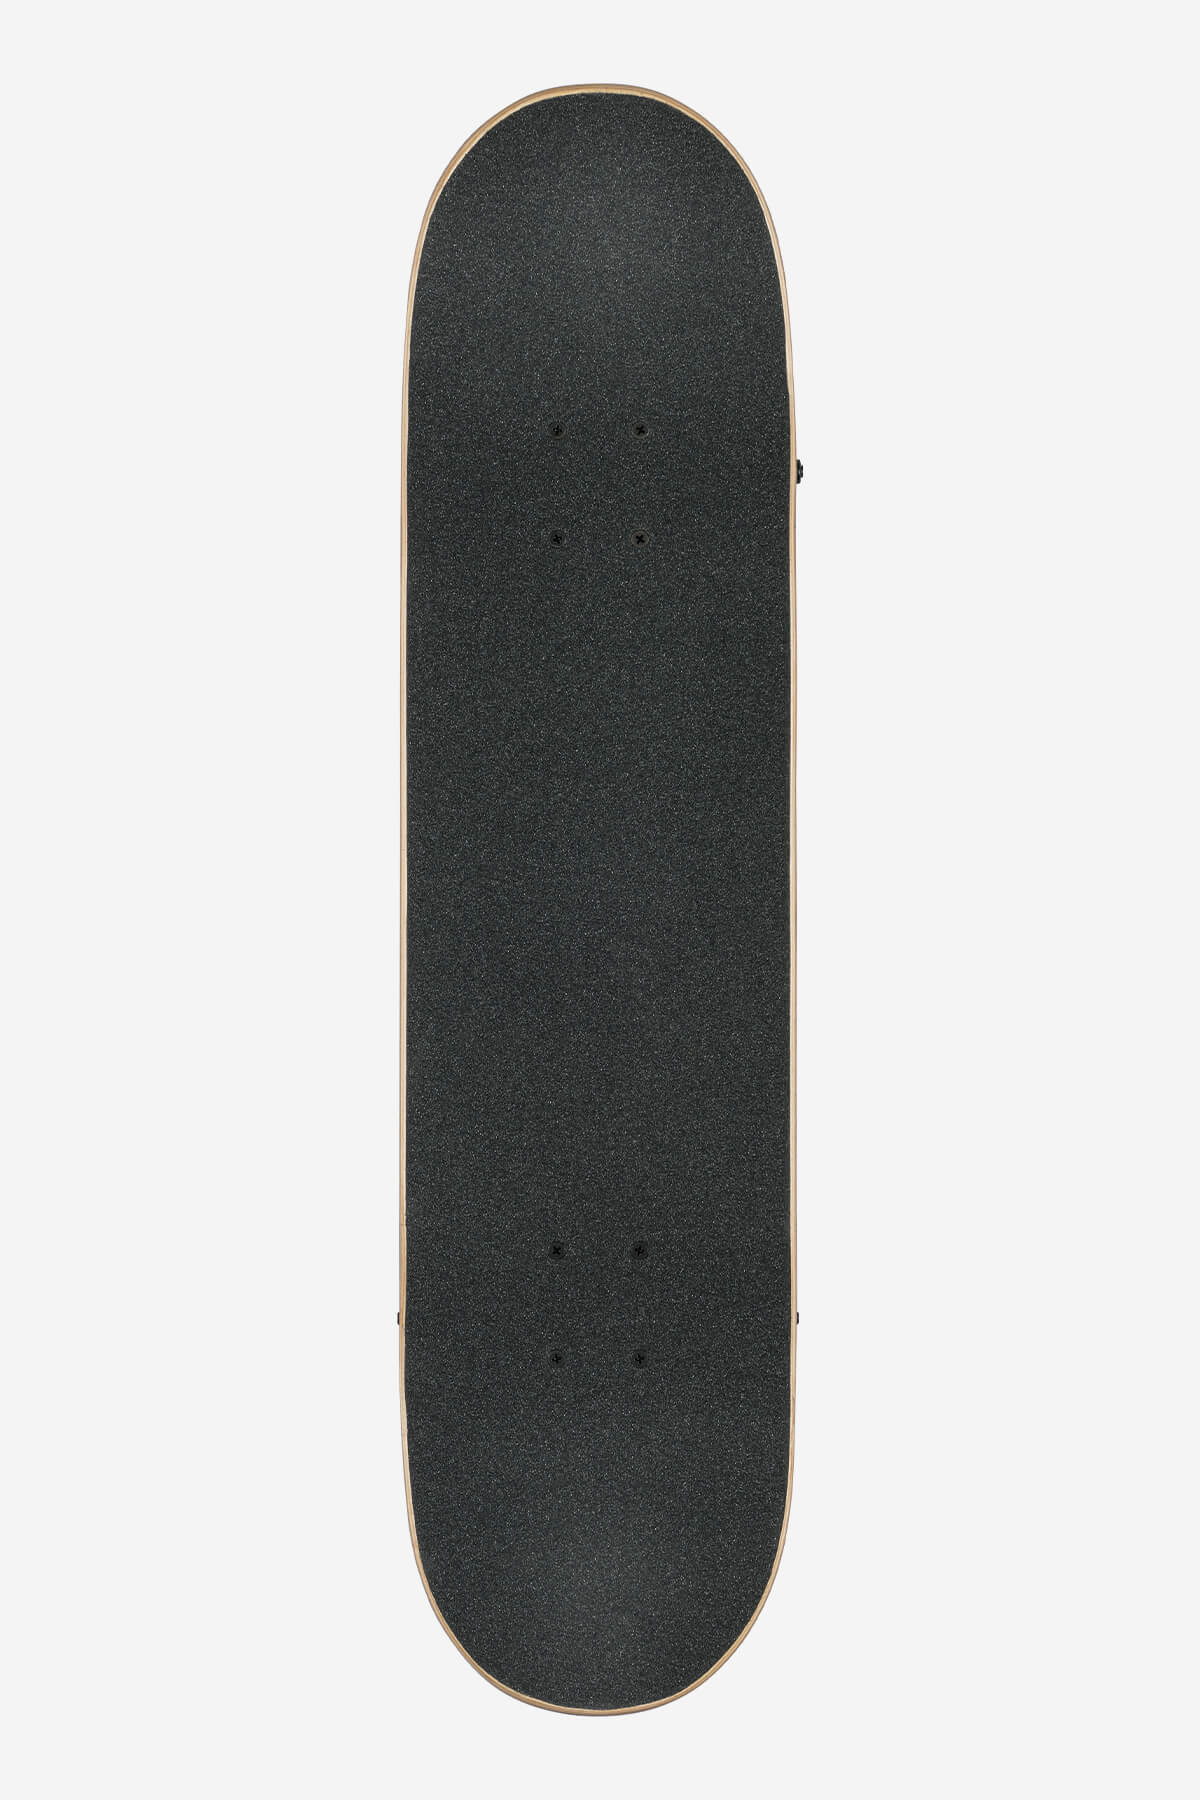 g1 lineform black 7.75" complete skateboard